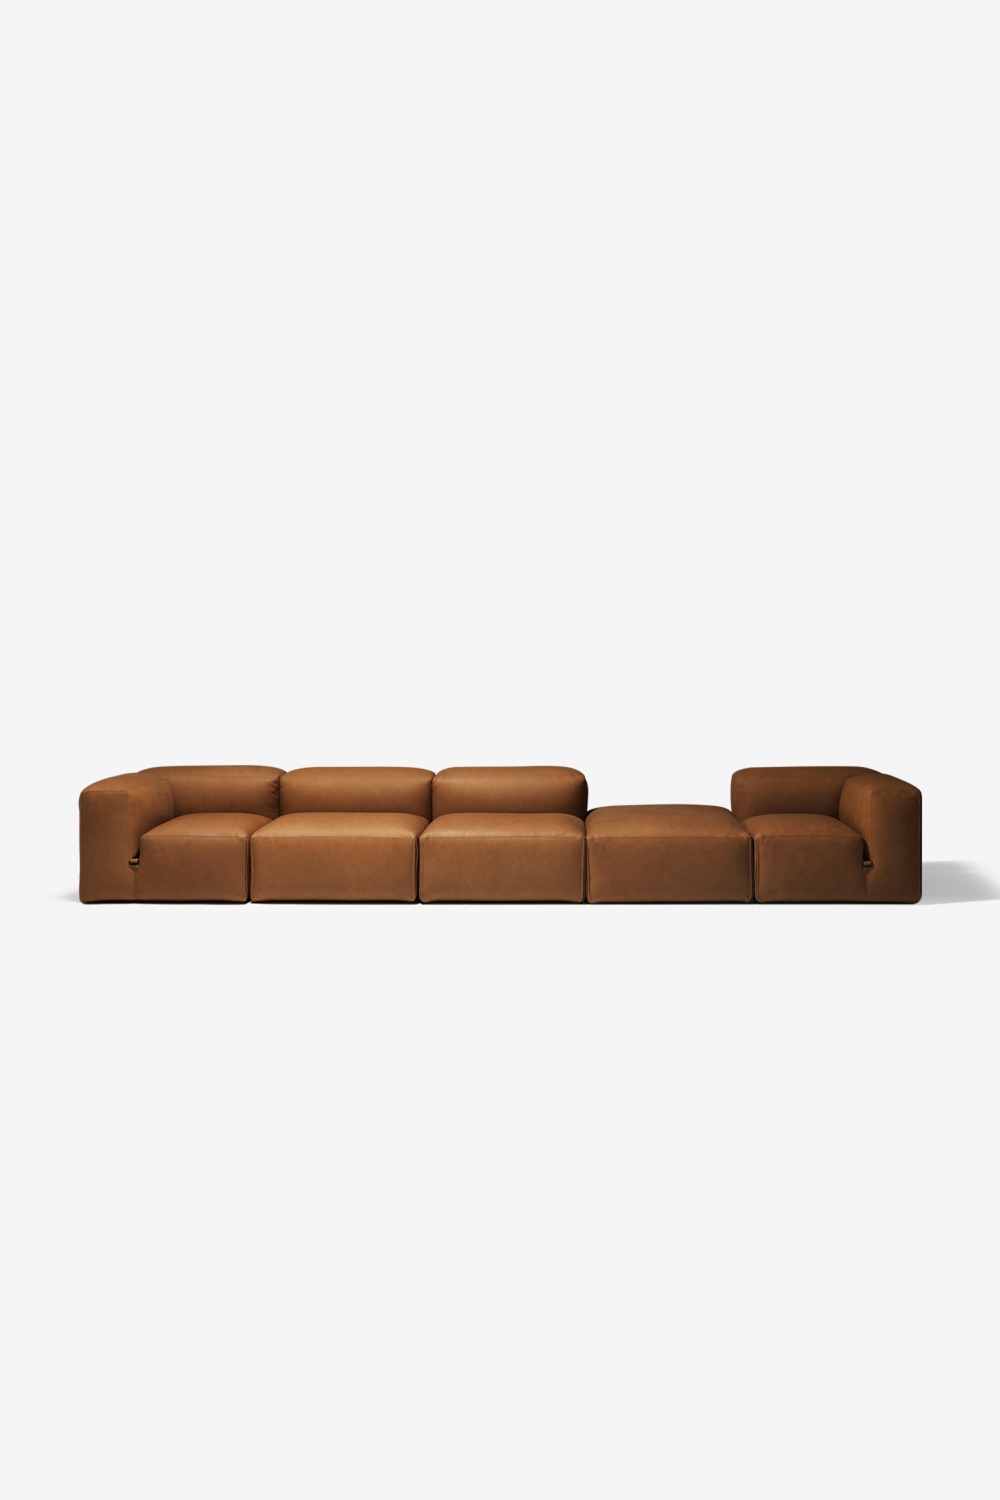 [Tacchini] LE MURA MODULE Sofa /5seat